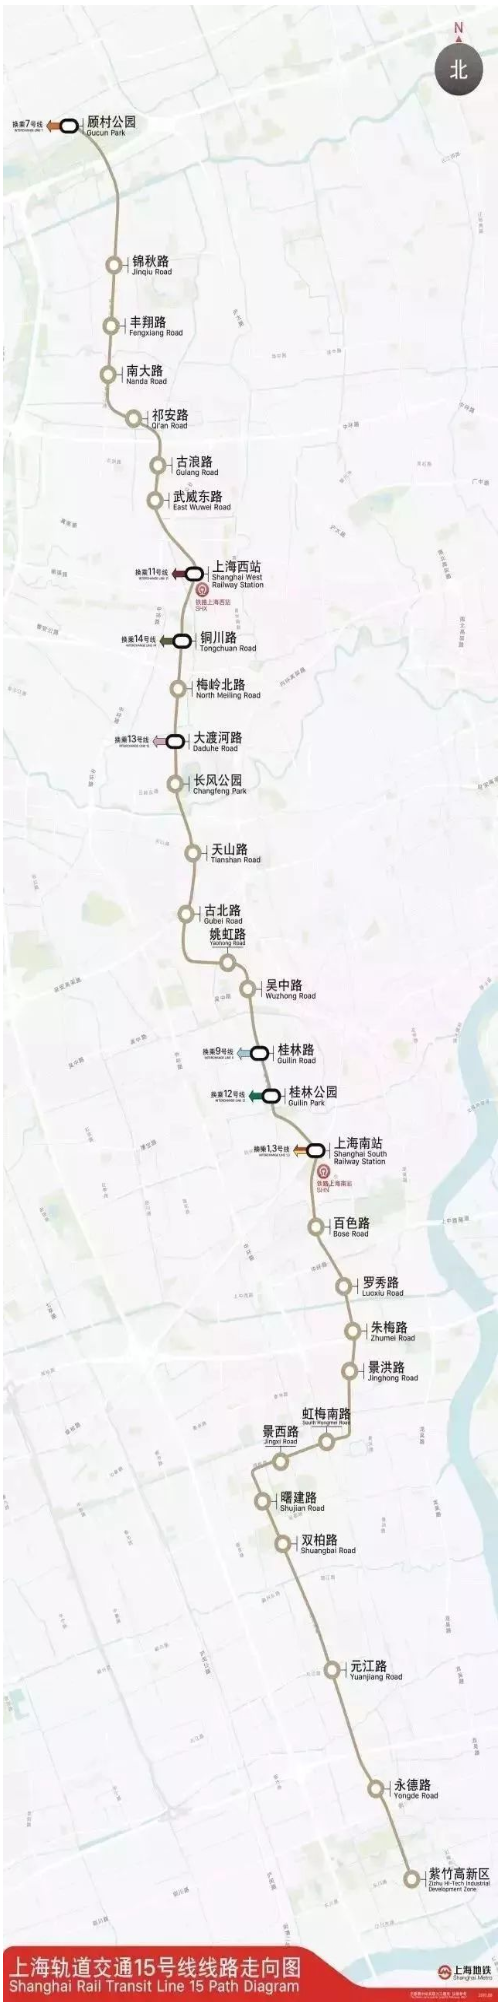 上海地铁15号线线路图